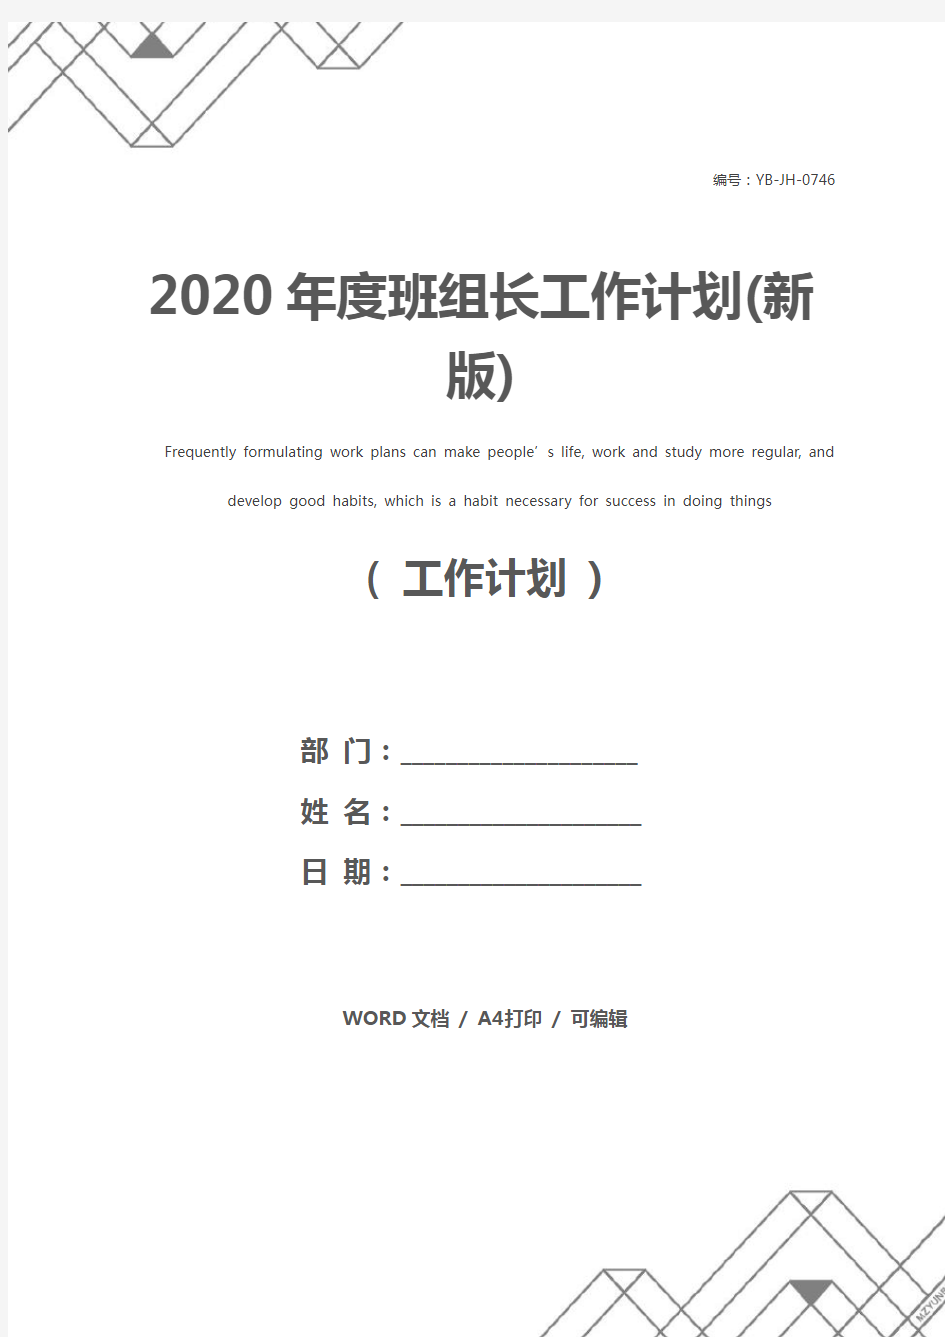 2020年度班组长工作计划(新版)